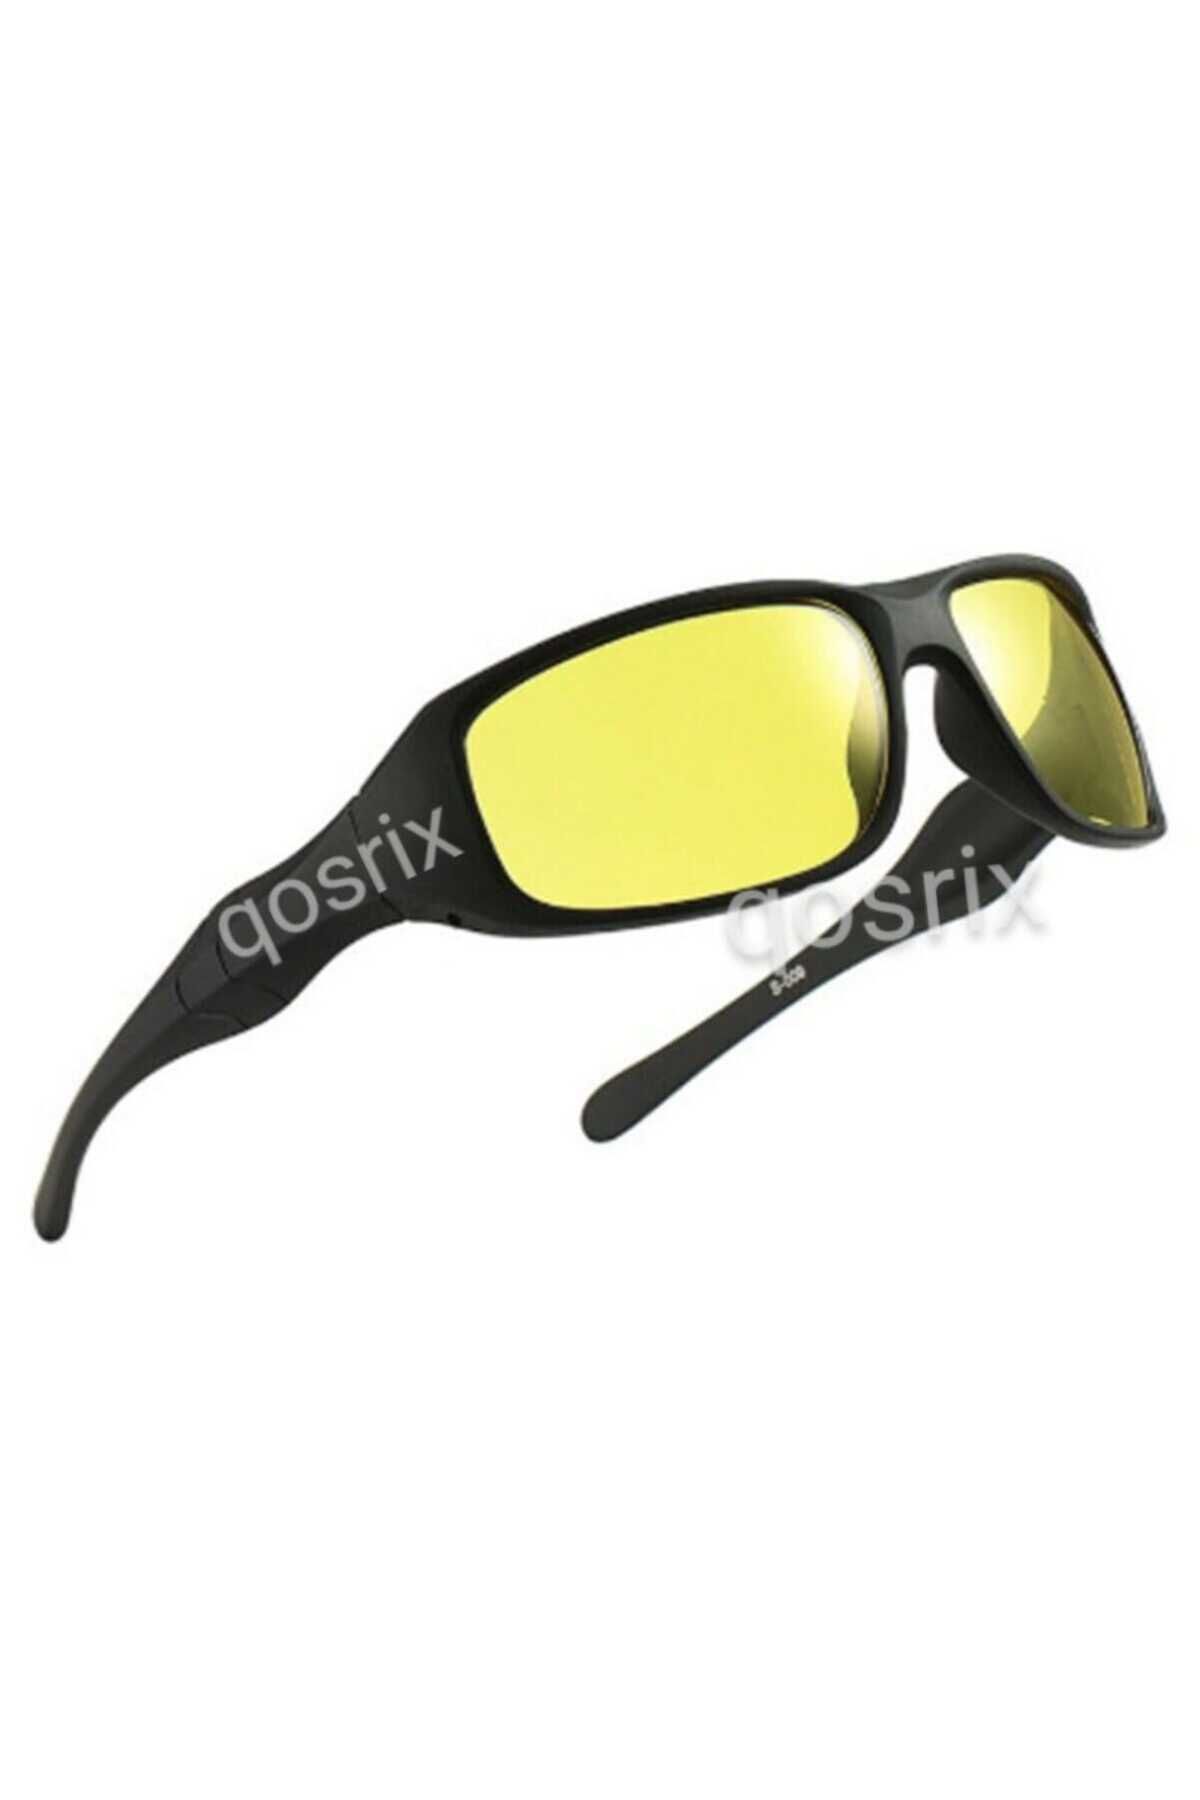 qosrix Anti Far Gece Görüş Gözlüğü Çerçeveli Gözlük Oto Araç Pratik Otomobil Araba Sürüş Için Cam Gözlük